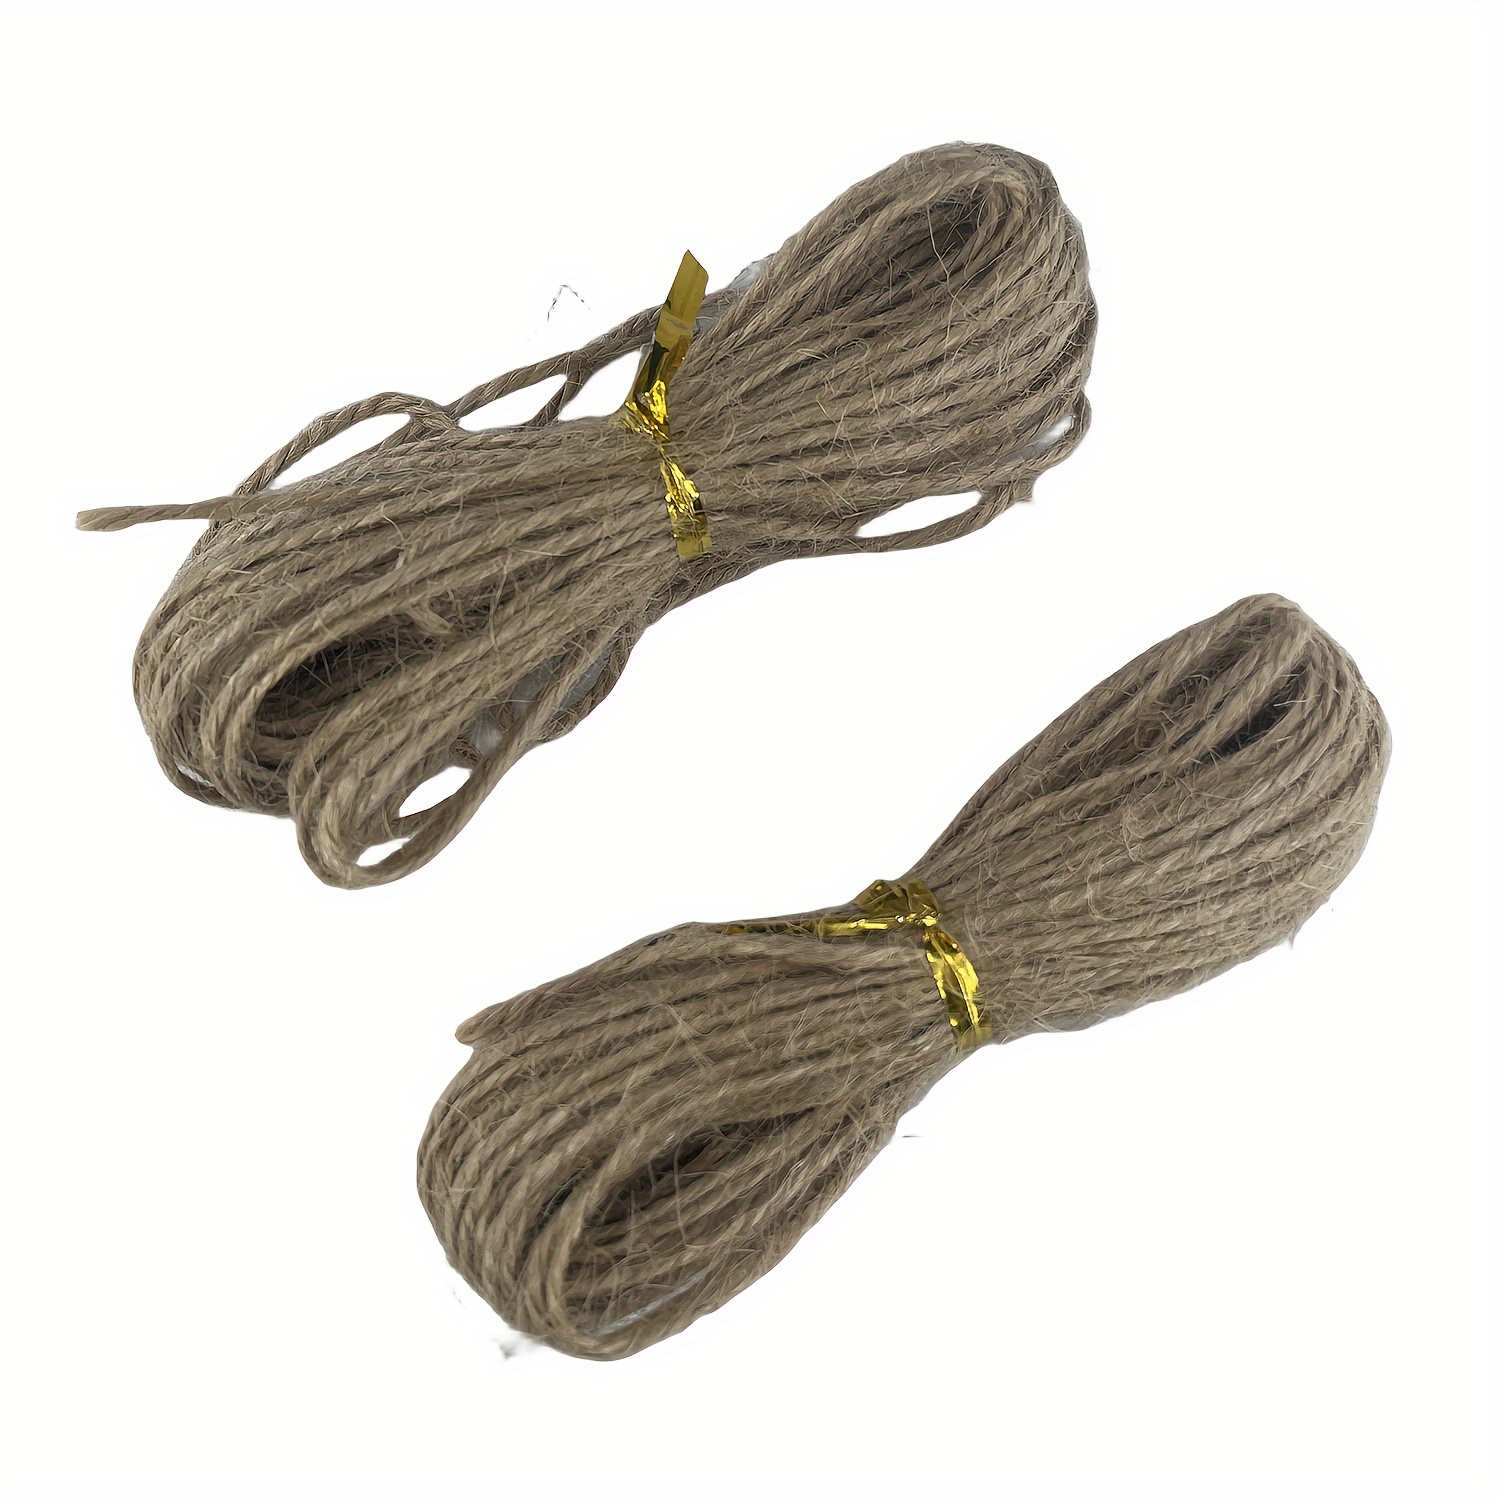 Natural Brown Jute Hemp Rope Twine String Cord